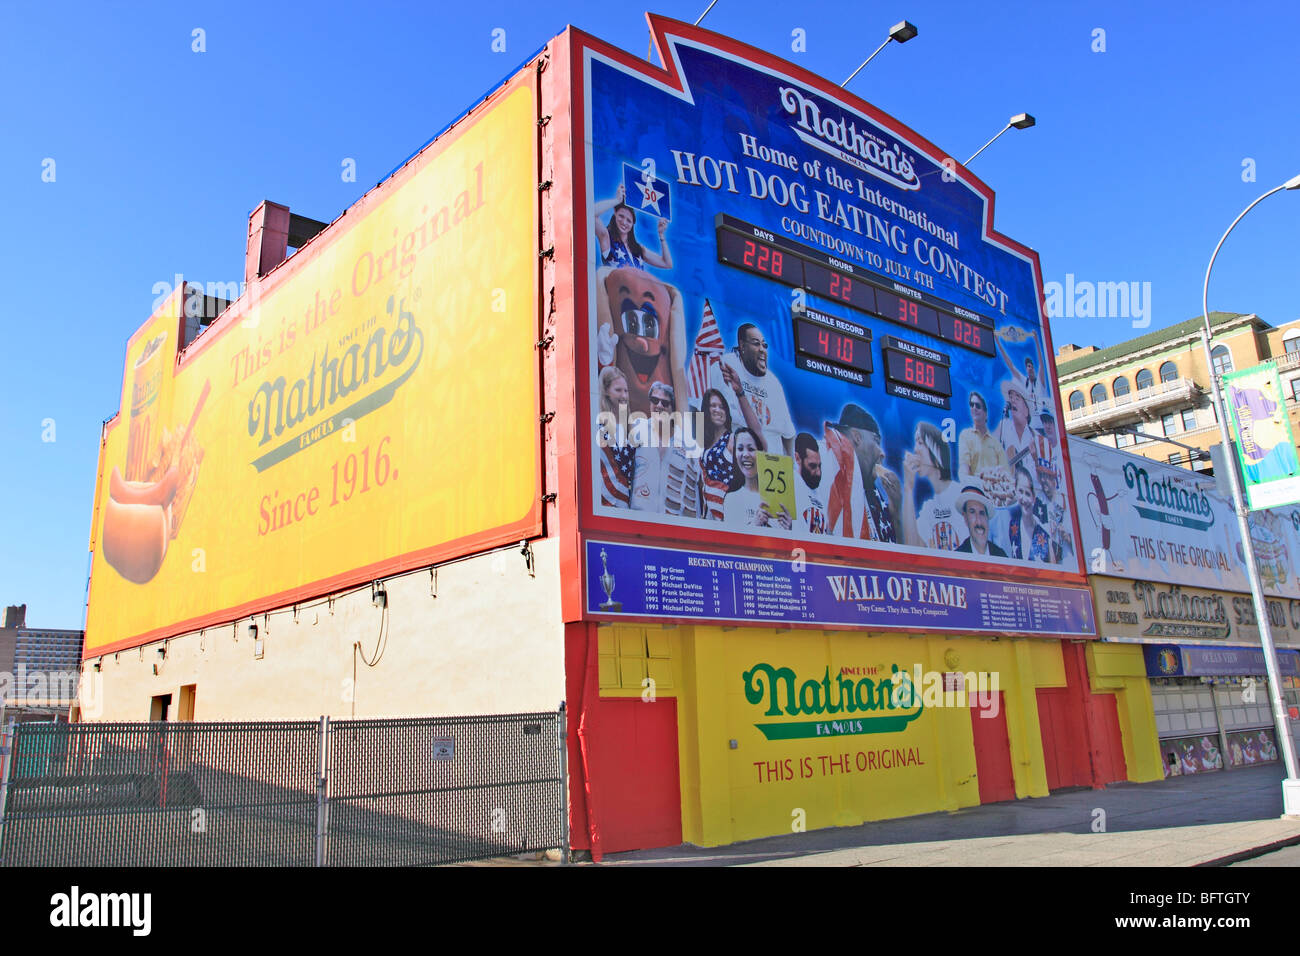 Il Nathans famoso ristorante 4 di Luglio di hot dog eating contest "wall of fame' del passato e campioni correnti, Coney Island, NY Foto Stock